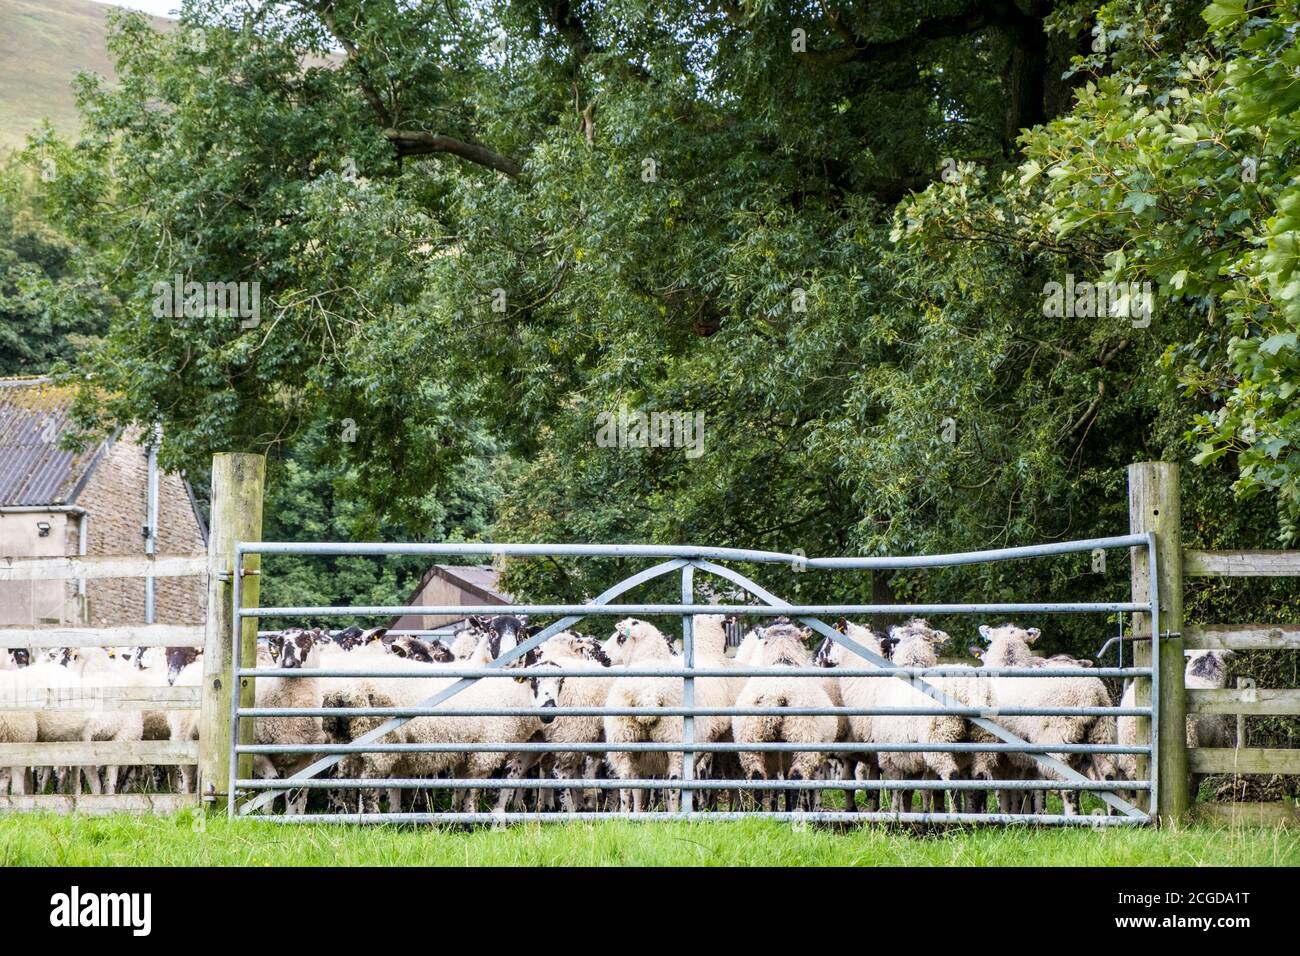 Pecore in una fattoria nella vale di Edale, Derbyshire, Inghilterra, Regno Unito Foto Stock